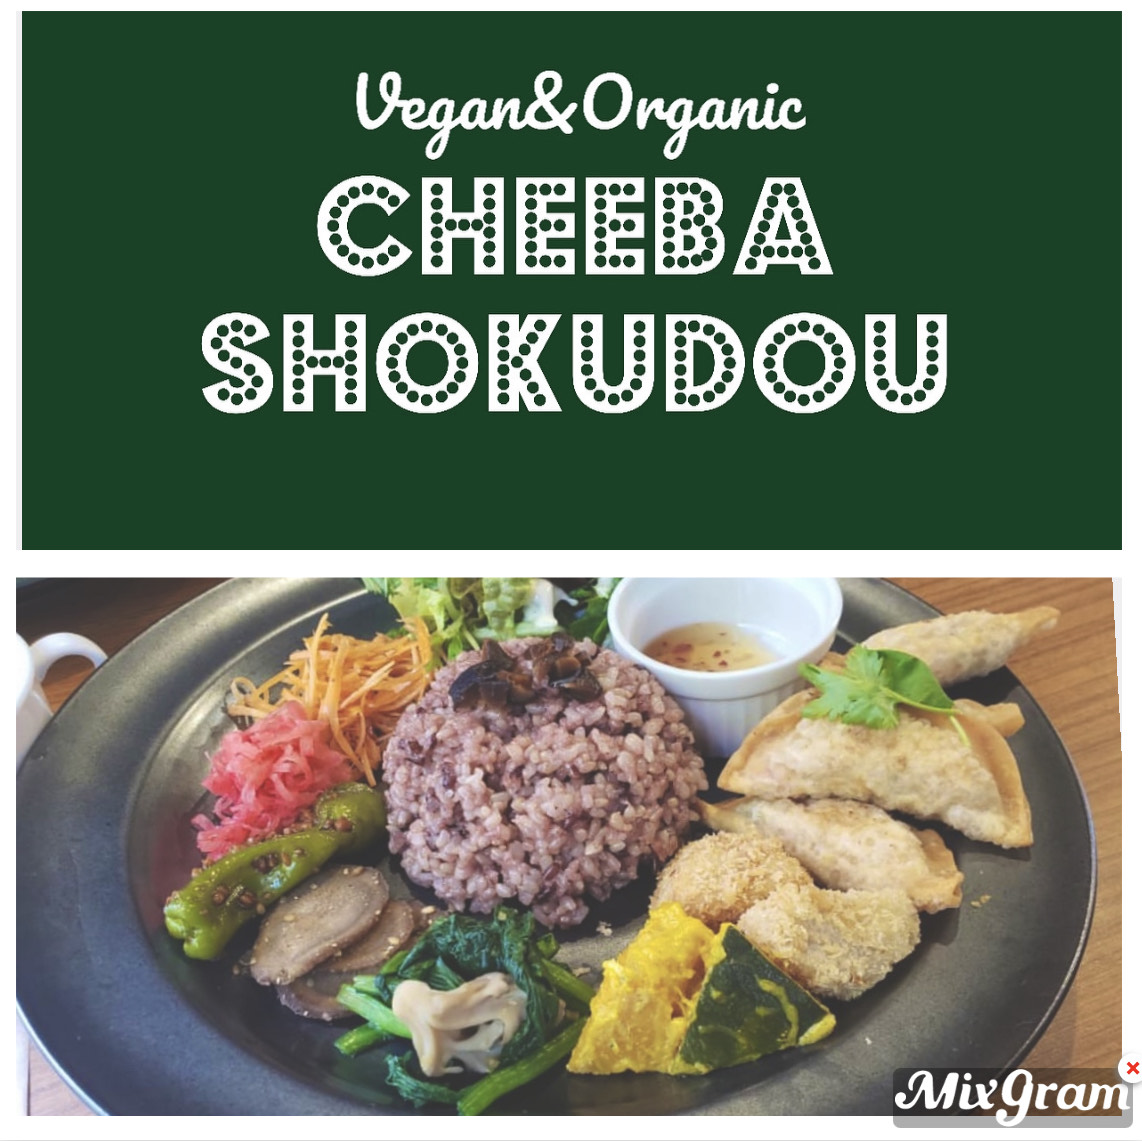 Vegan & Organic Cheeba Shokudou